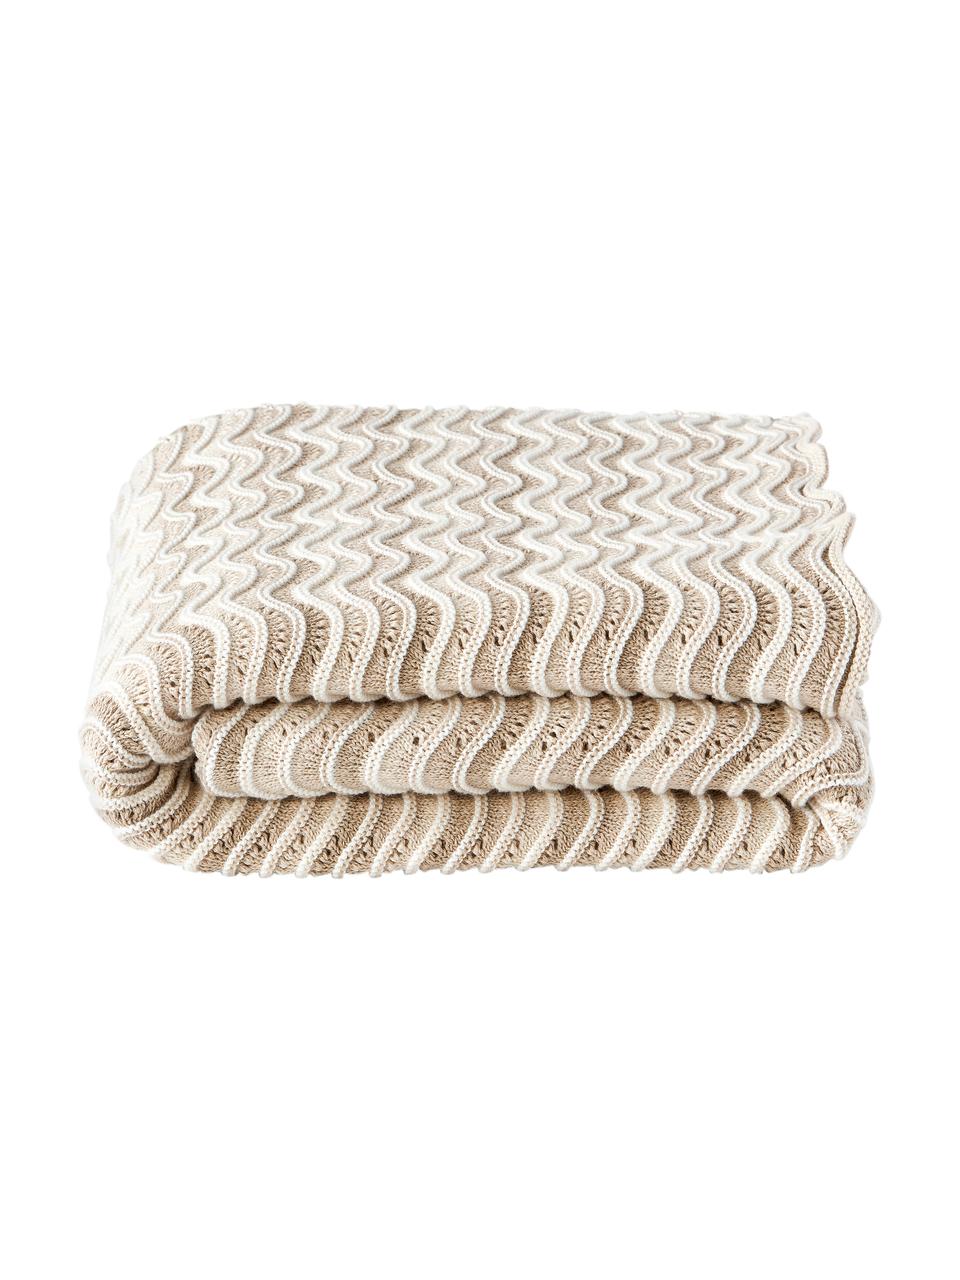 Coperta in cotone a maglia Emilio, 100% cotone, Beige, bianco crema, Larg. 130 x Lung. 170 cm